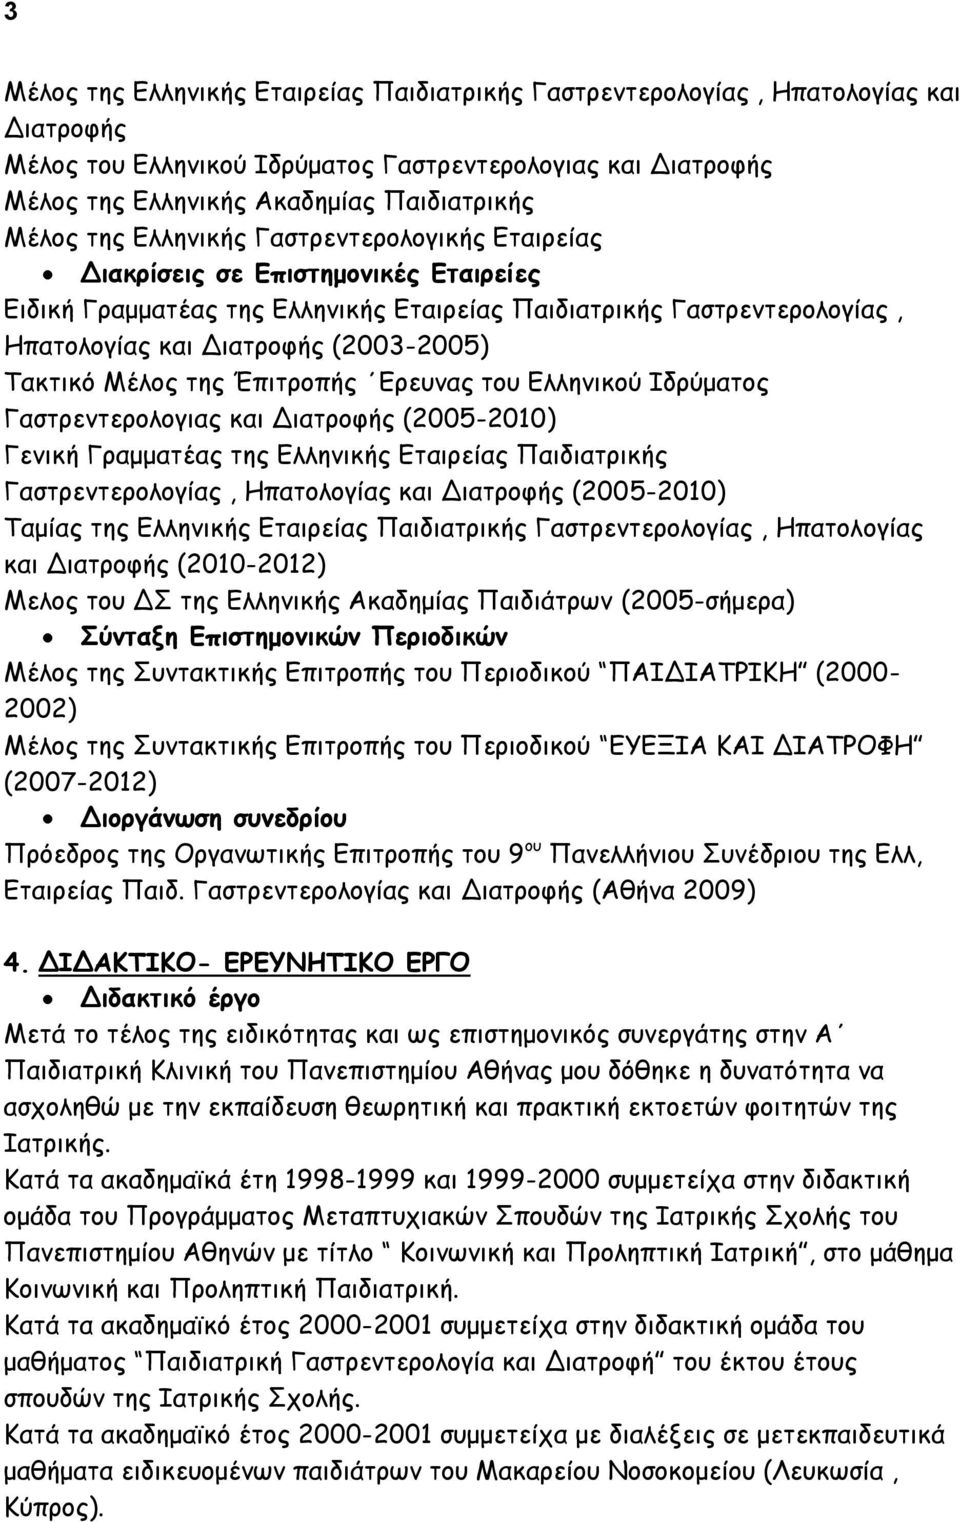 Τακτικό Μέλος της Έπιτροπής Ερευνας του Ελληνικού Ιδρύματος Γαστρεντερολογιας και Διατροφής (2005-2010) Γενική Γραμματέας της Ελληνικής Εταιρείας Παιδιατρικής Γαστρεντερολογίας, Ηπατολογίας και